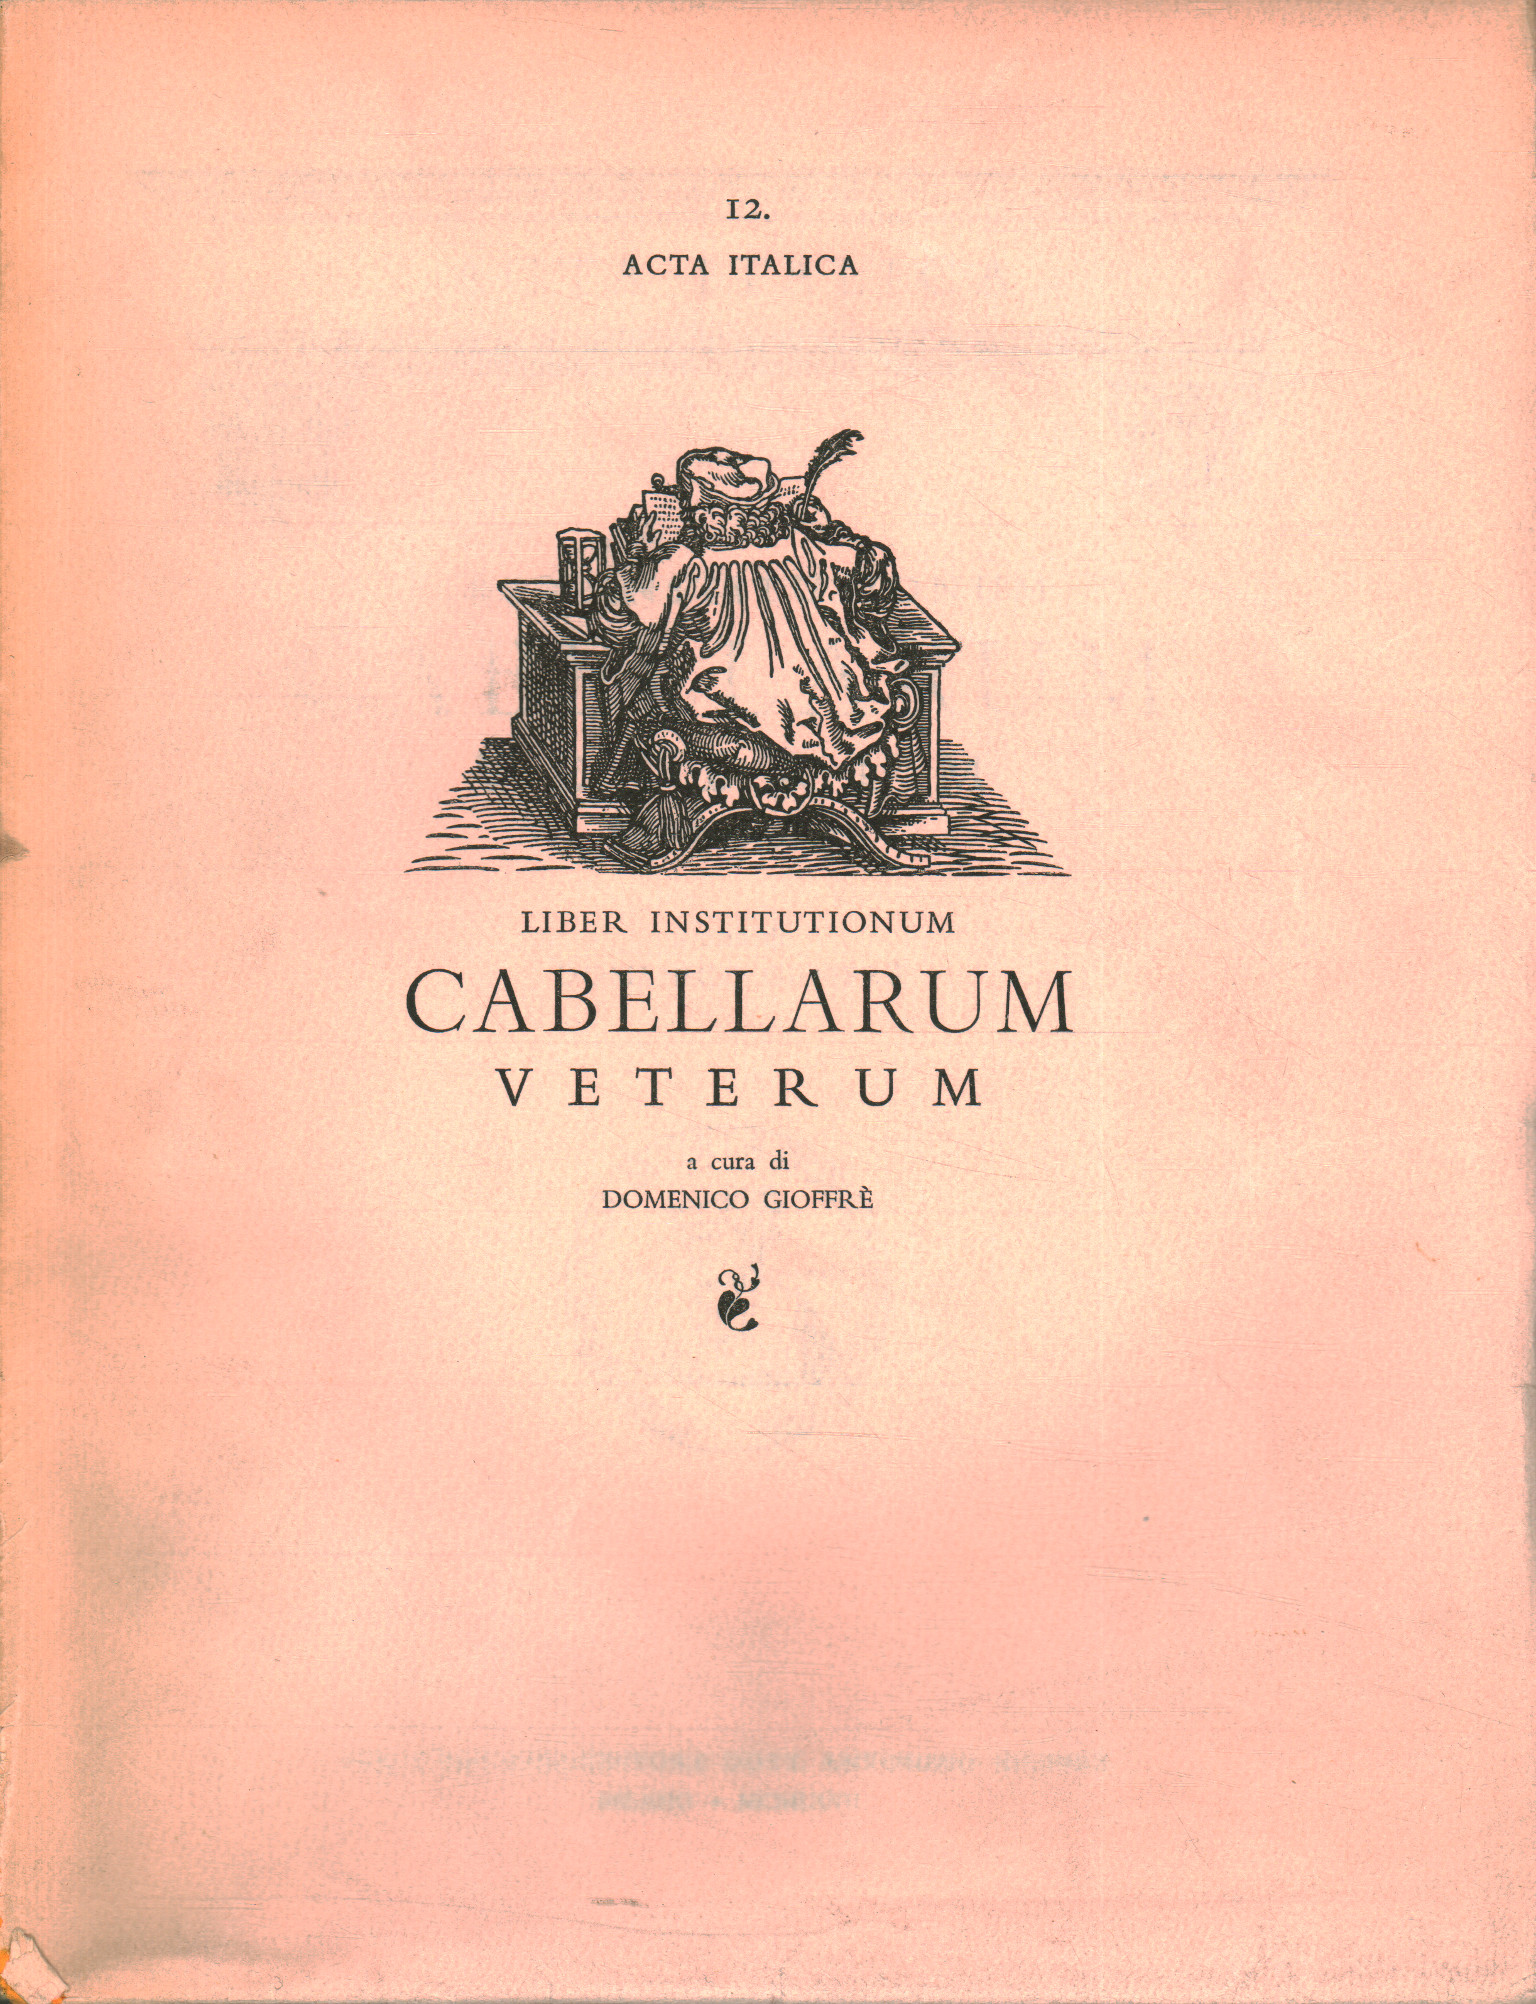 Liber institutionum cabellarum veterum [